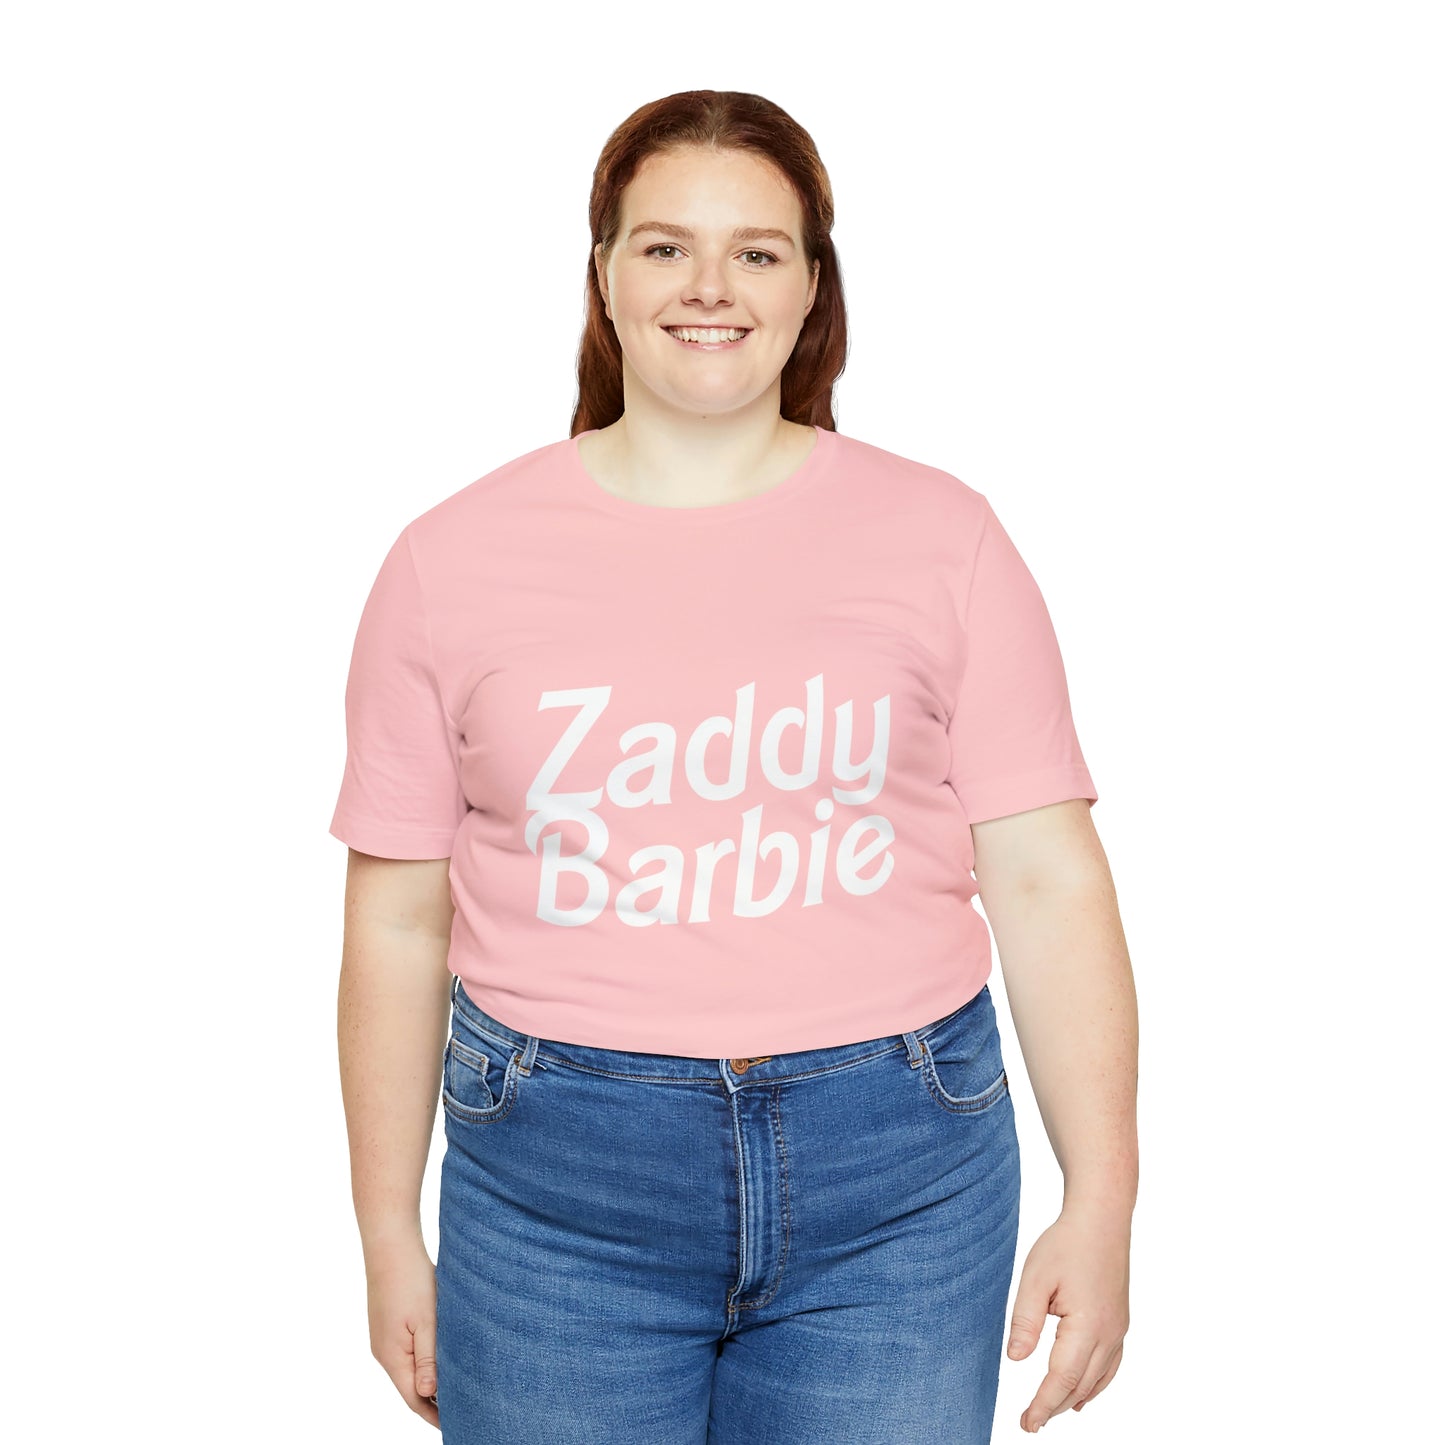 Zaddy Barbie